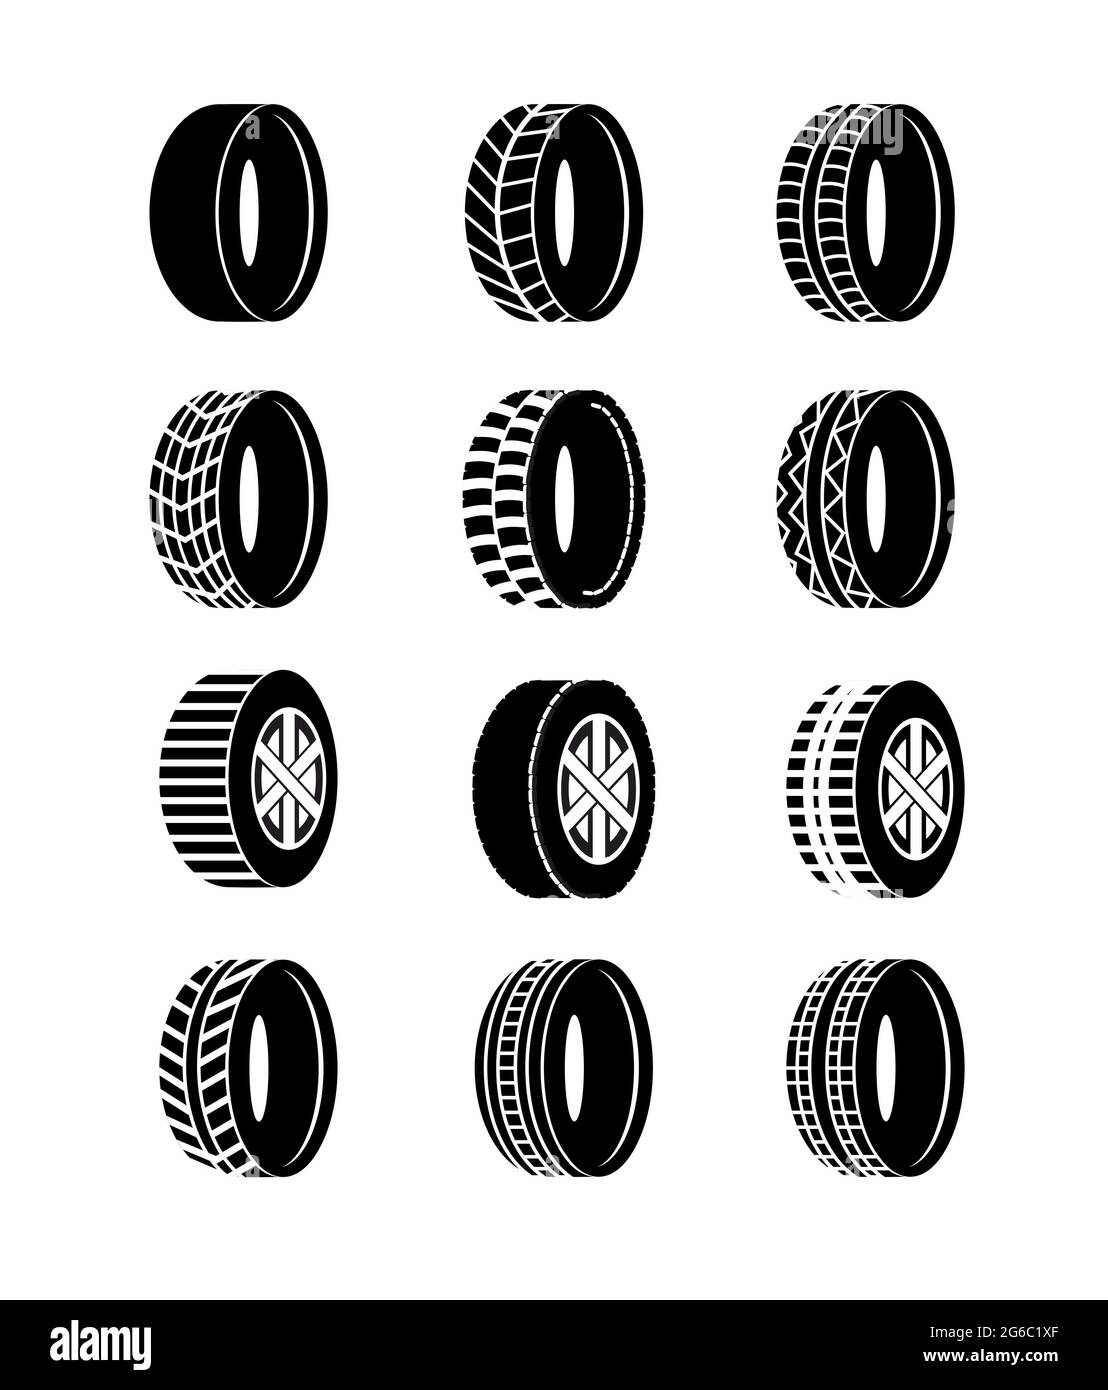 Illustrazione vettoriale insieme di icone nere di pneumatici e ruote su sfondo bianco. Diversi simboli e loghi dei pneumatici delle ruote. Illustrazione Vettoriale